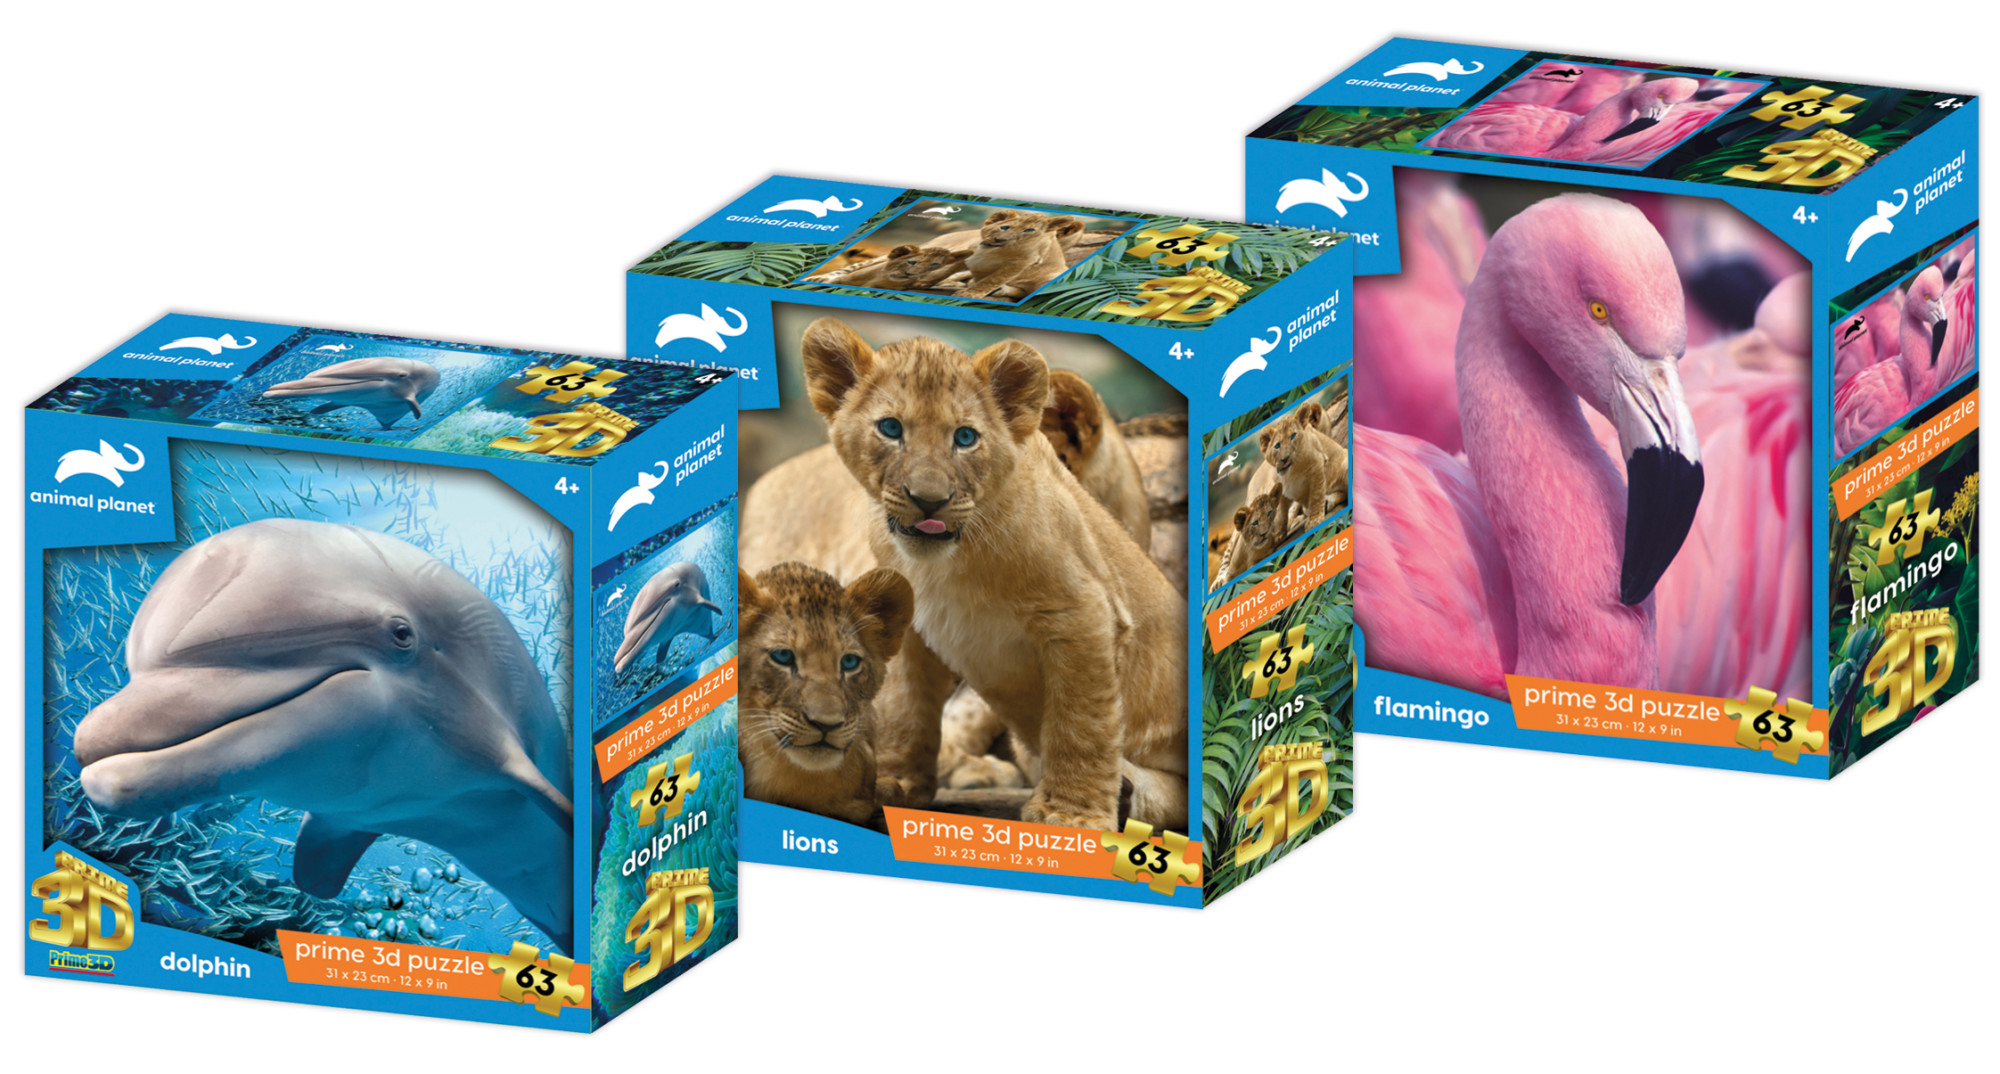 Dauphins Animal Planet Premier 3D Puzzle lenticulaire 150 pieces 